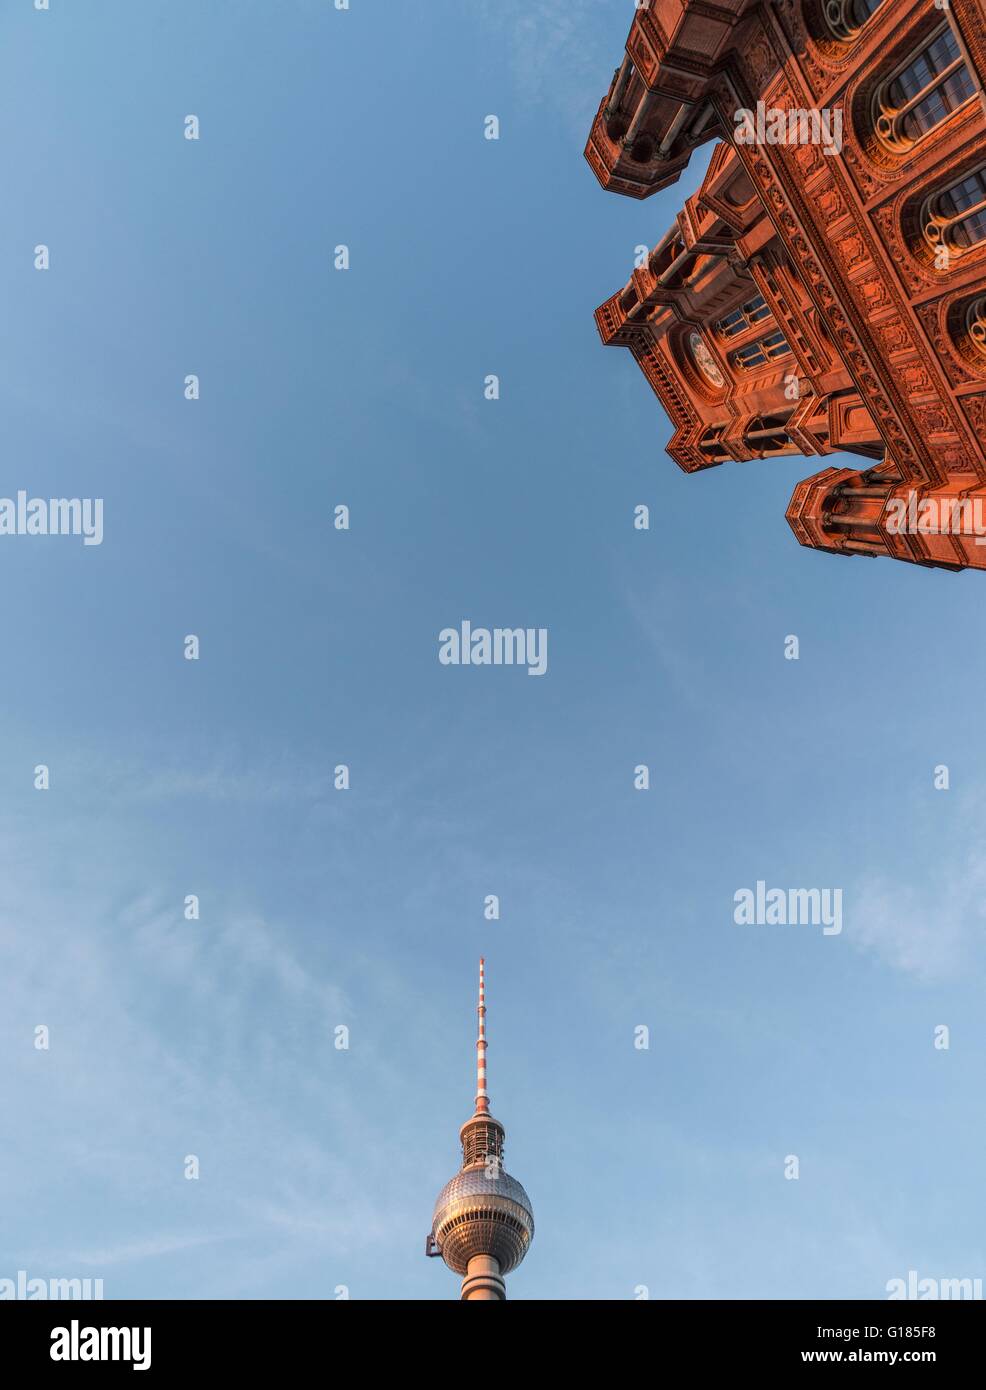 Low angle view de l'Hôtel de Ville Rouge (Rothes Rathaus) et la tour de radio de Berlin (Berliner Funkturm), Allemagne Banque D'Images